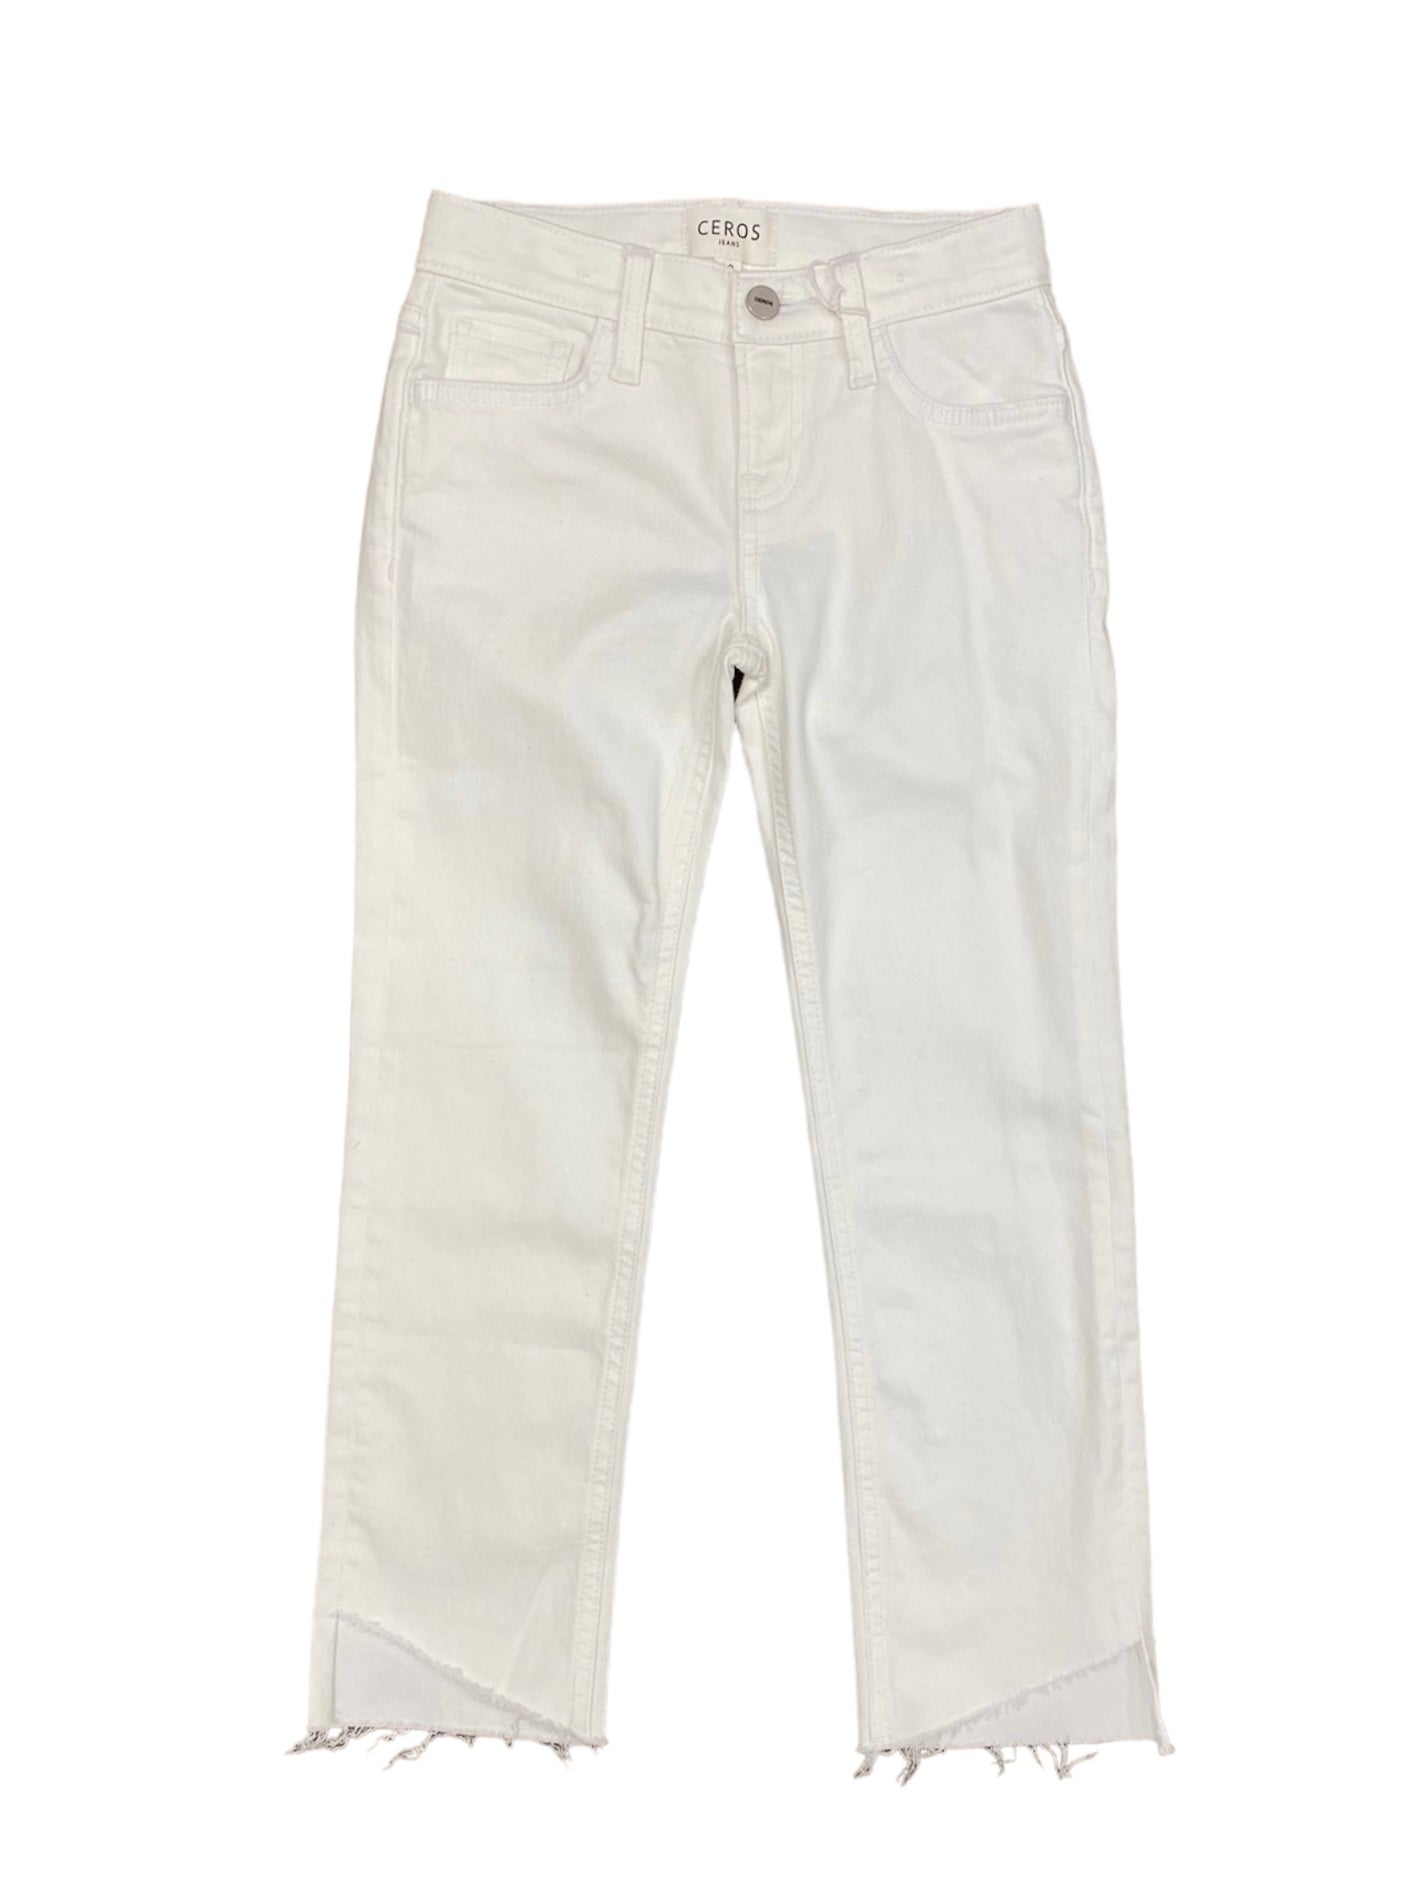 White Crop Jeans